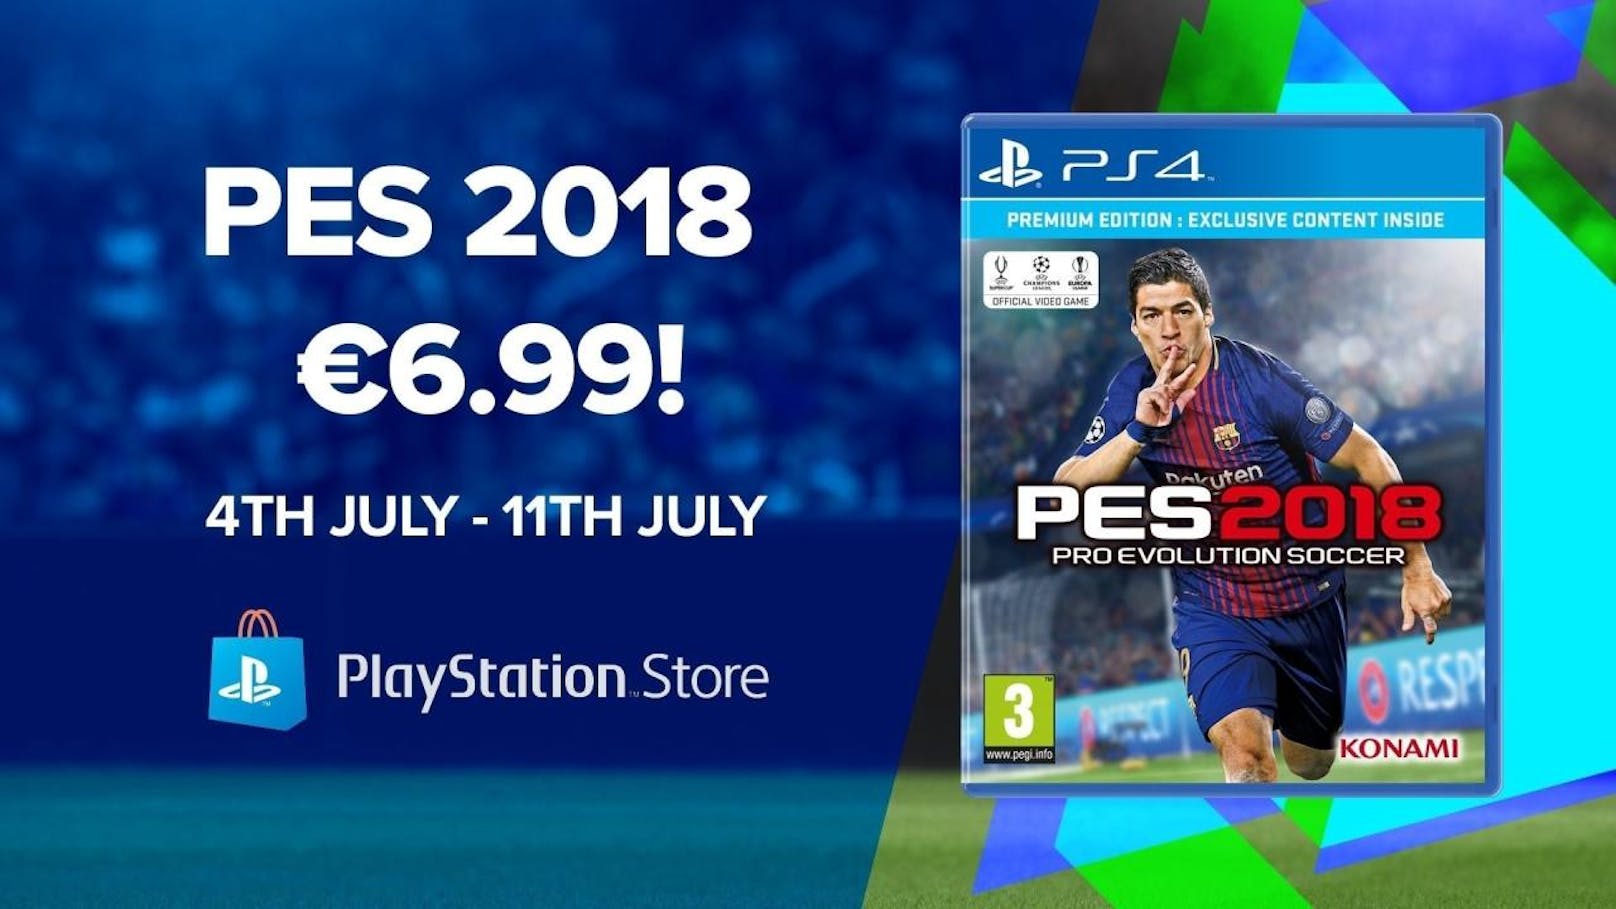 Als Angebot der Woche kostet Pro Evolution Soccer 2018 im PlayStation Store ab sofort bis zum nächsten Mittwoch, den 11. Juli, nur 6,99 Euro. Das Angebot umfasst die digitale Edition für PS4 und bietet Fußballvergnügen pur.